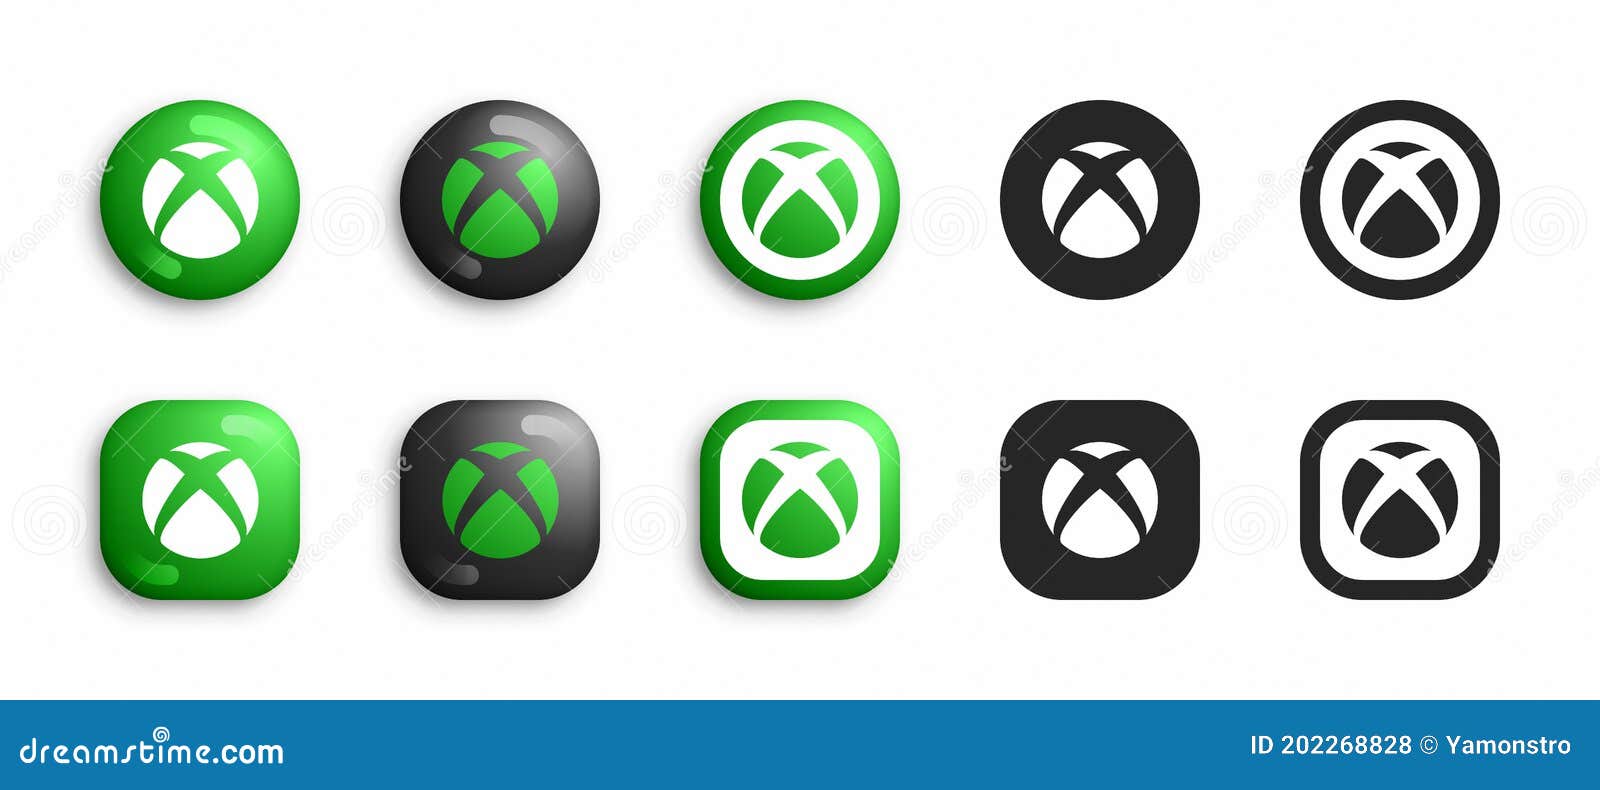 Microsoft XBox icons là biểu tượng không còn xa lạ gì với các game thủ trên toàn thế giới. Hãy cùng với chúng tôi khám phá những logo đẹp và ý nghĩa của các dòng máy chơi game Xbox. Đây sẽ là một chuyến phiêu lưu thực sự đầy thú vị.